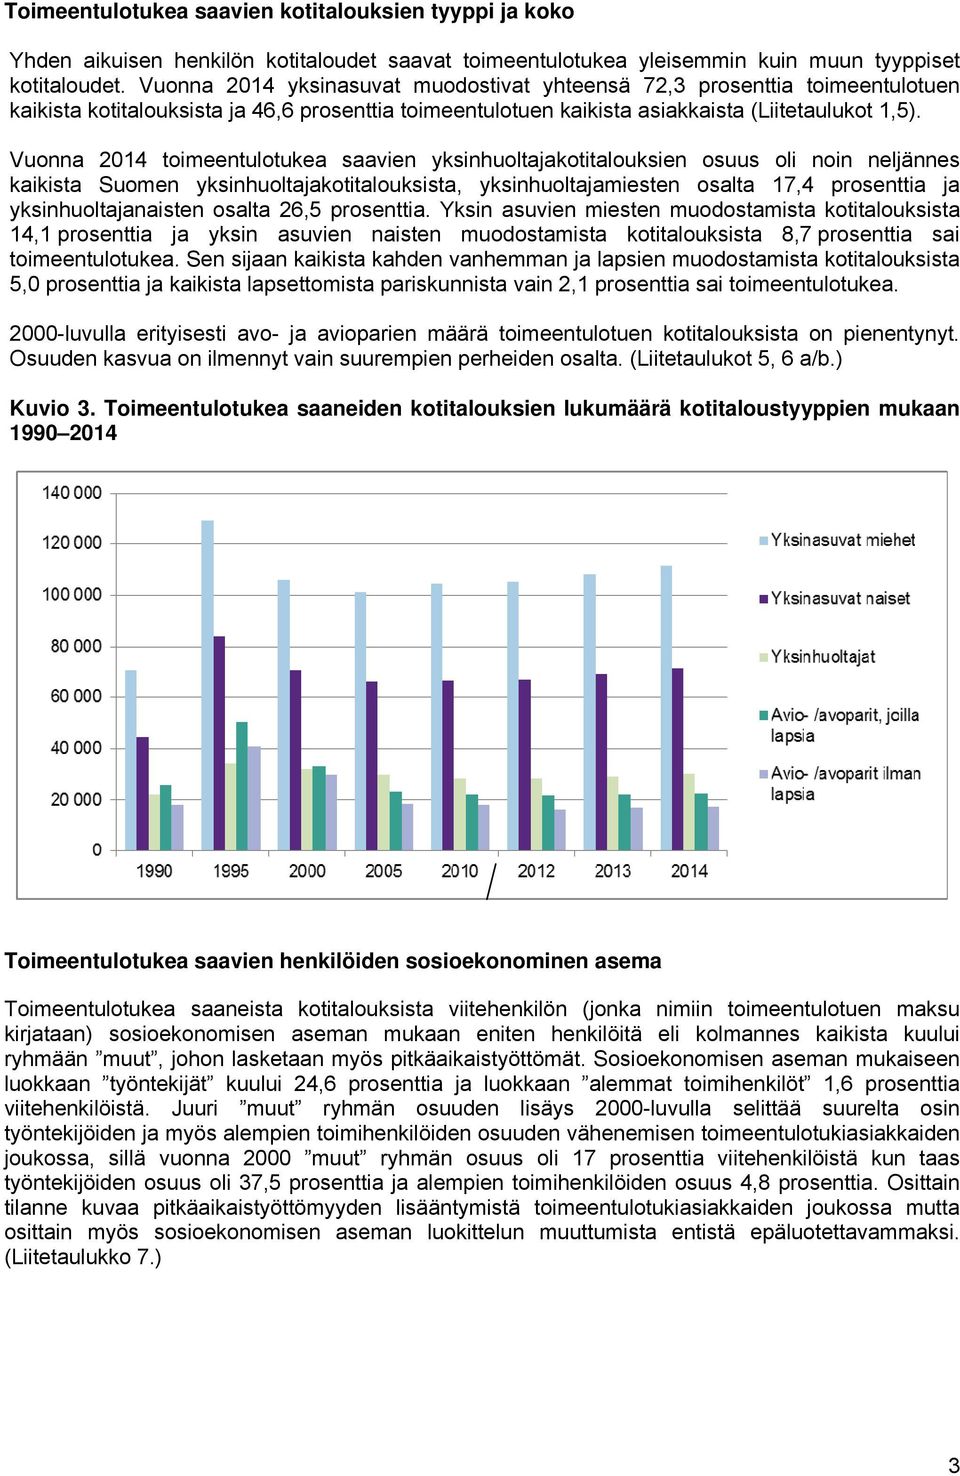 Vuonna 2014 toimeentulotukea saavien yksinhuoltajakotitalouksien osuus oli noin neljännes kaikista Suomen yksinhuoltajakotitalouksista, yksinhuoltajamiesten osalta 17,4 prosenttia ja